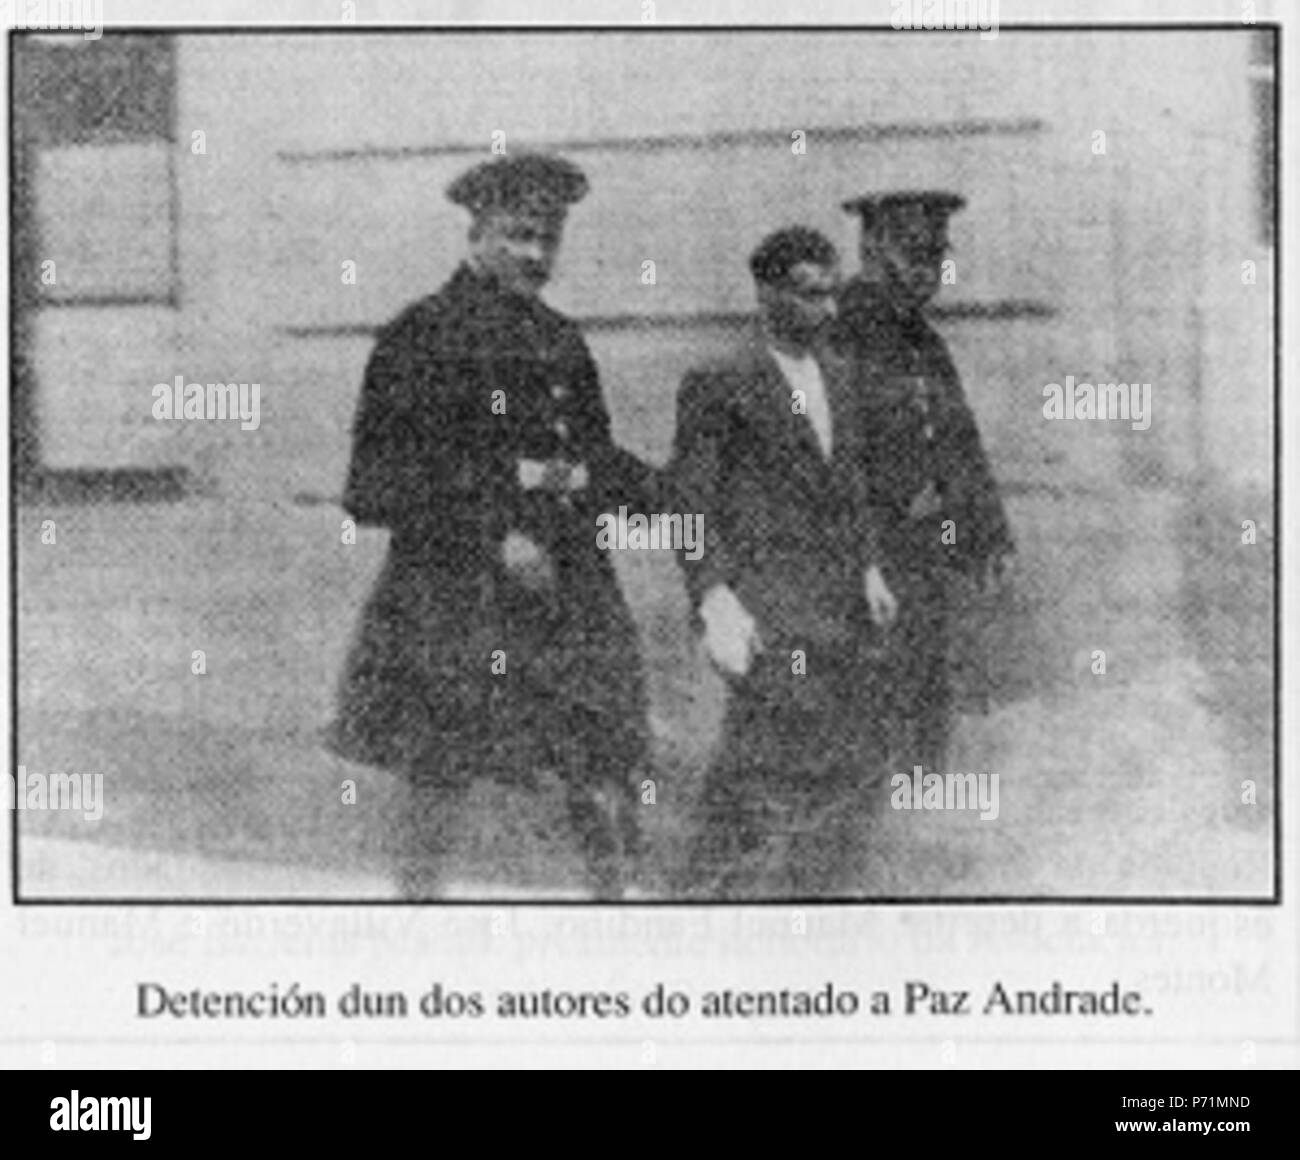 26 Detención dun dos autores do atentado a Paz Andrade Stock Photo